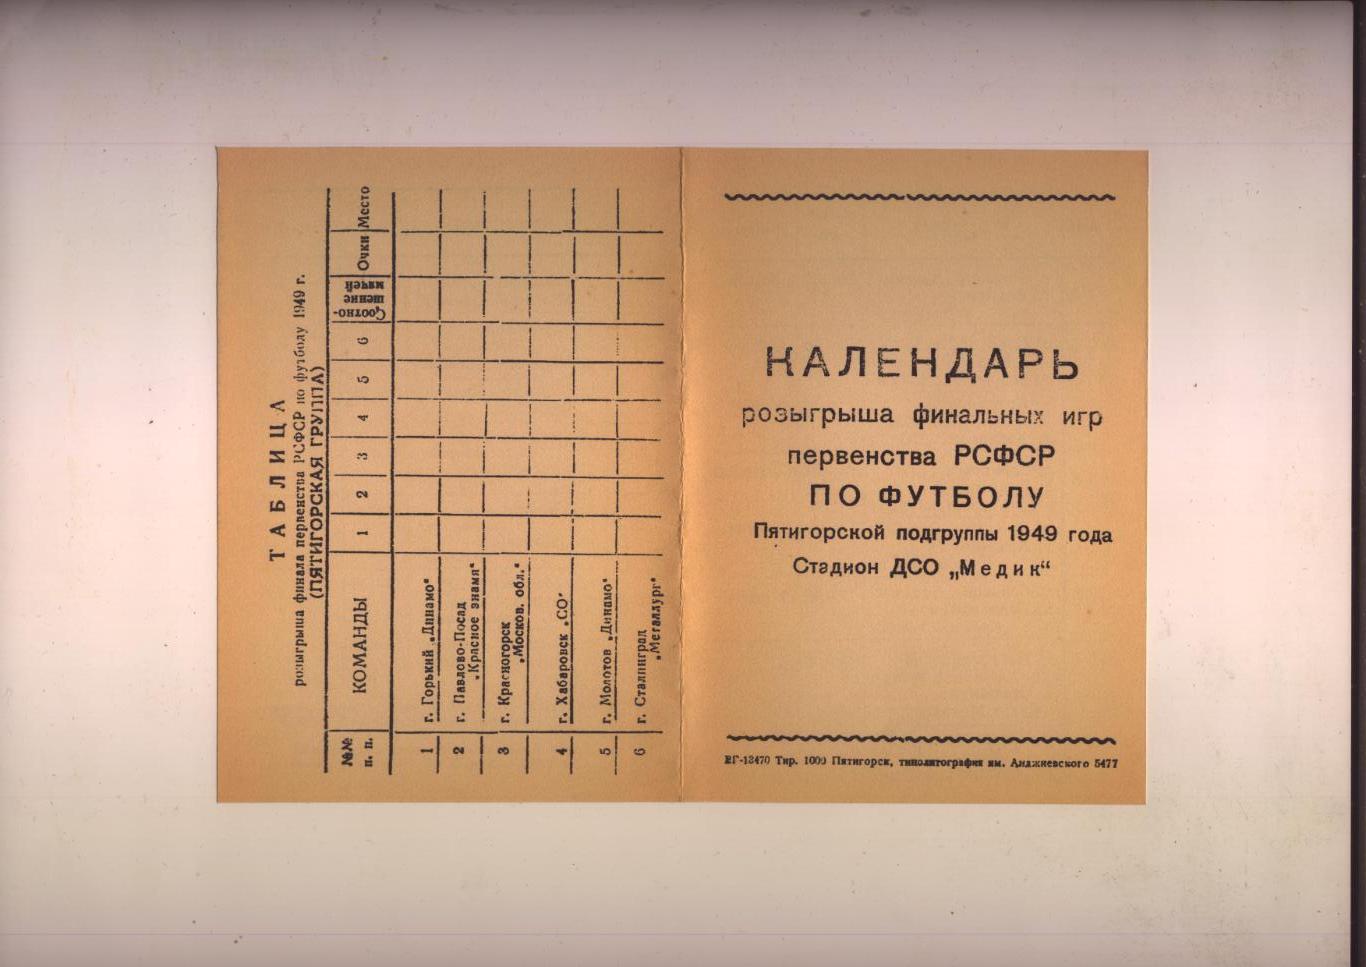 Календарь розыгрыша ФИНАЛьных игр Пер-ва РСФСР по футболу 1949 Участники см ниже